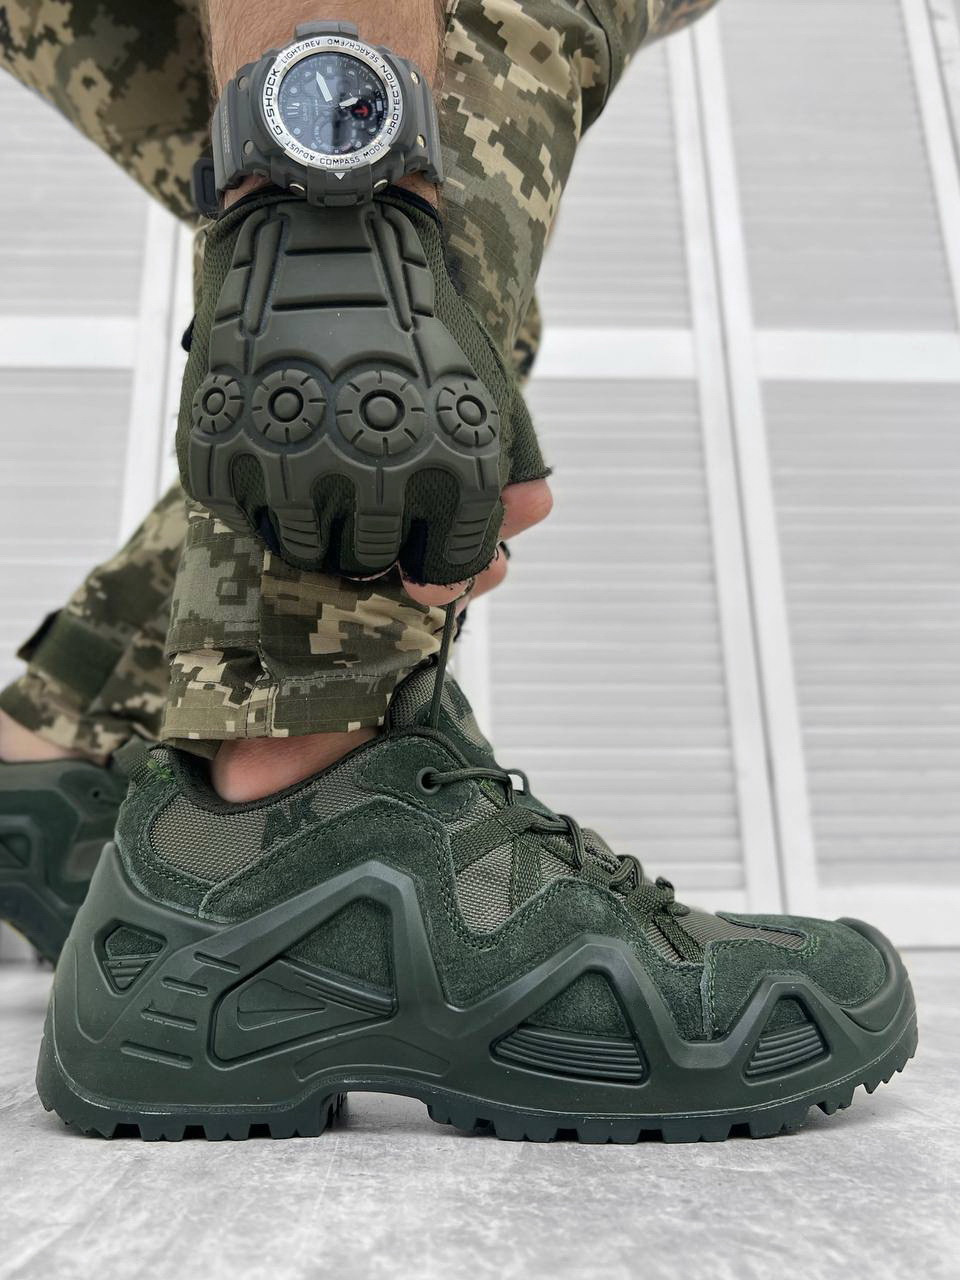 Військові кросівки олива АК, армійські кросівки хакі весна-літо, тактичні кросівки олива зсу cg182